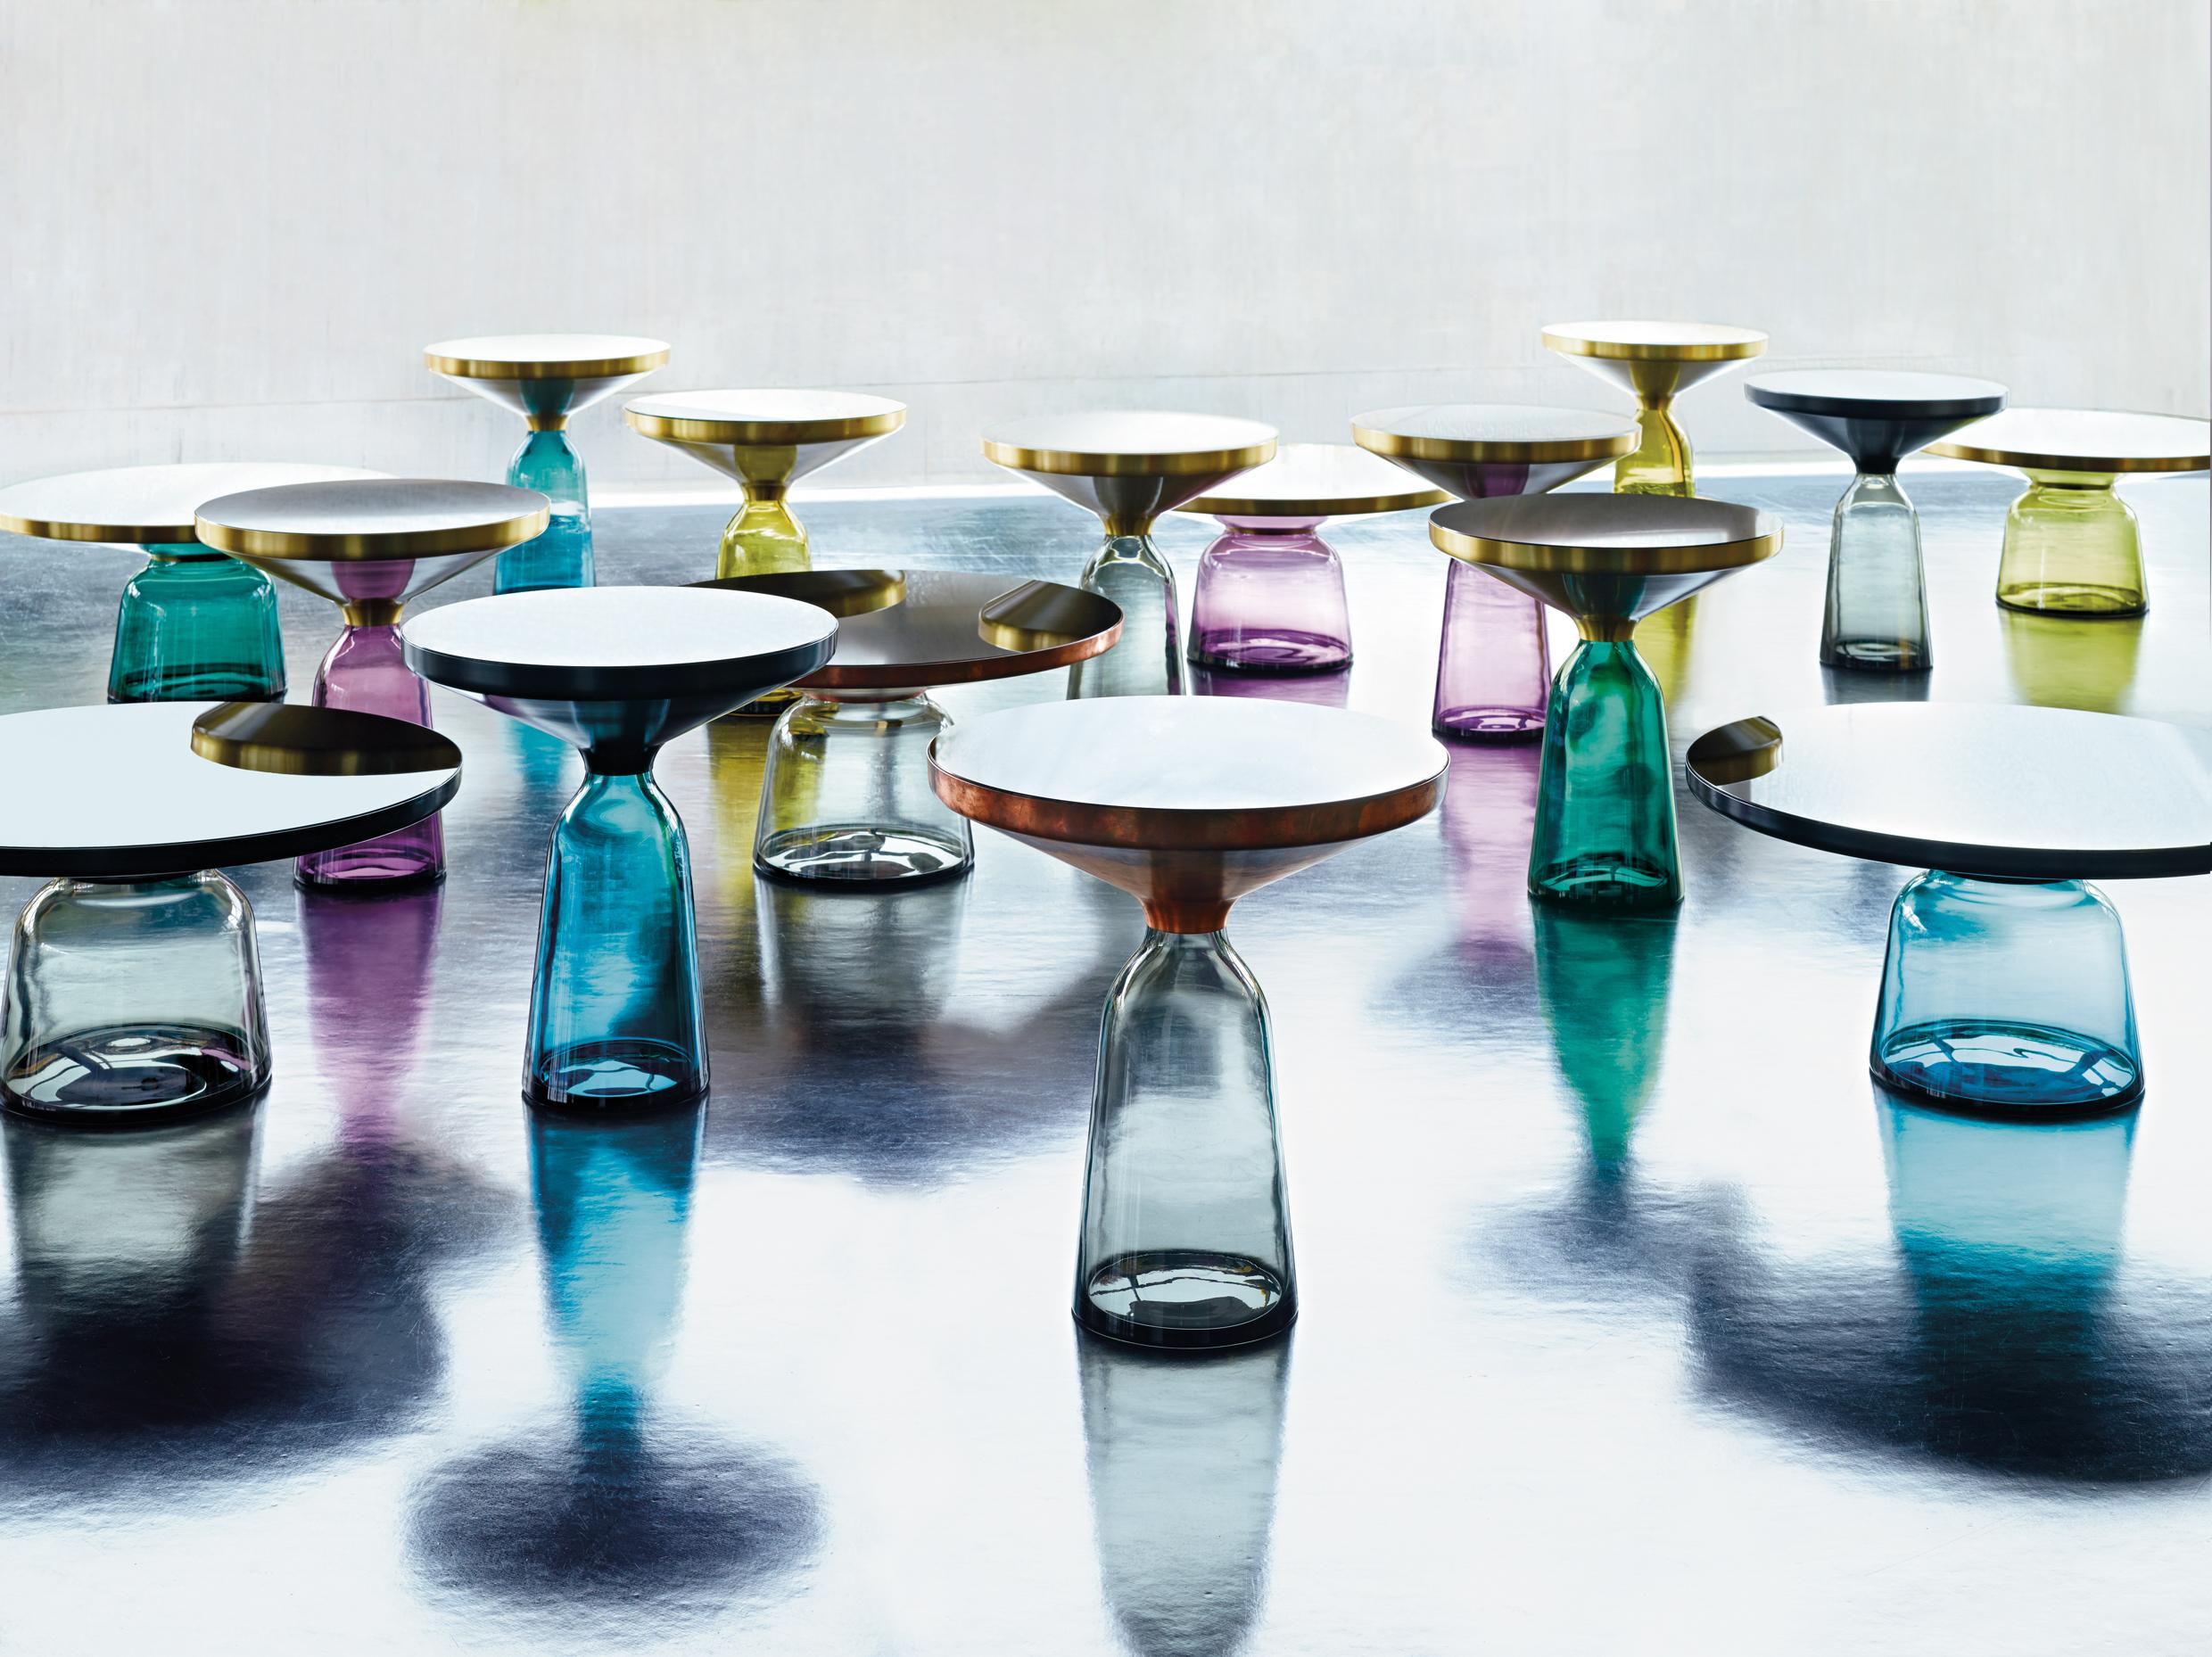 Un classique moderne en tant que miniature : la table cloche de Sebastian Herkner bouleverse nos habitudes de perception en utilisant le matériau léger et fragile du verre comme base pour un plateau en métal qui semble flotter au-dessus. Soufflée à